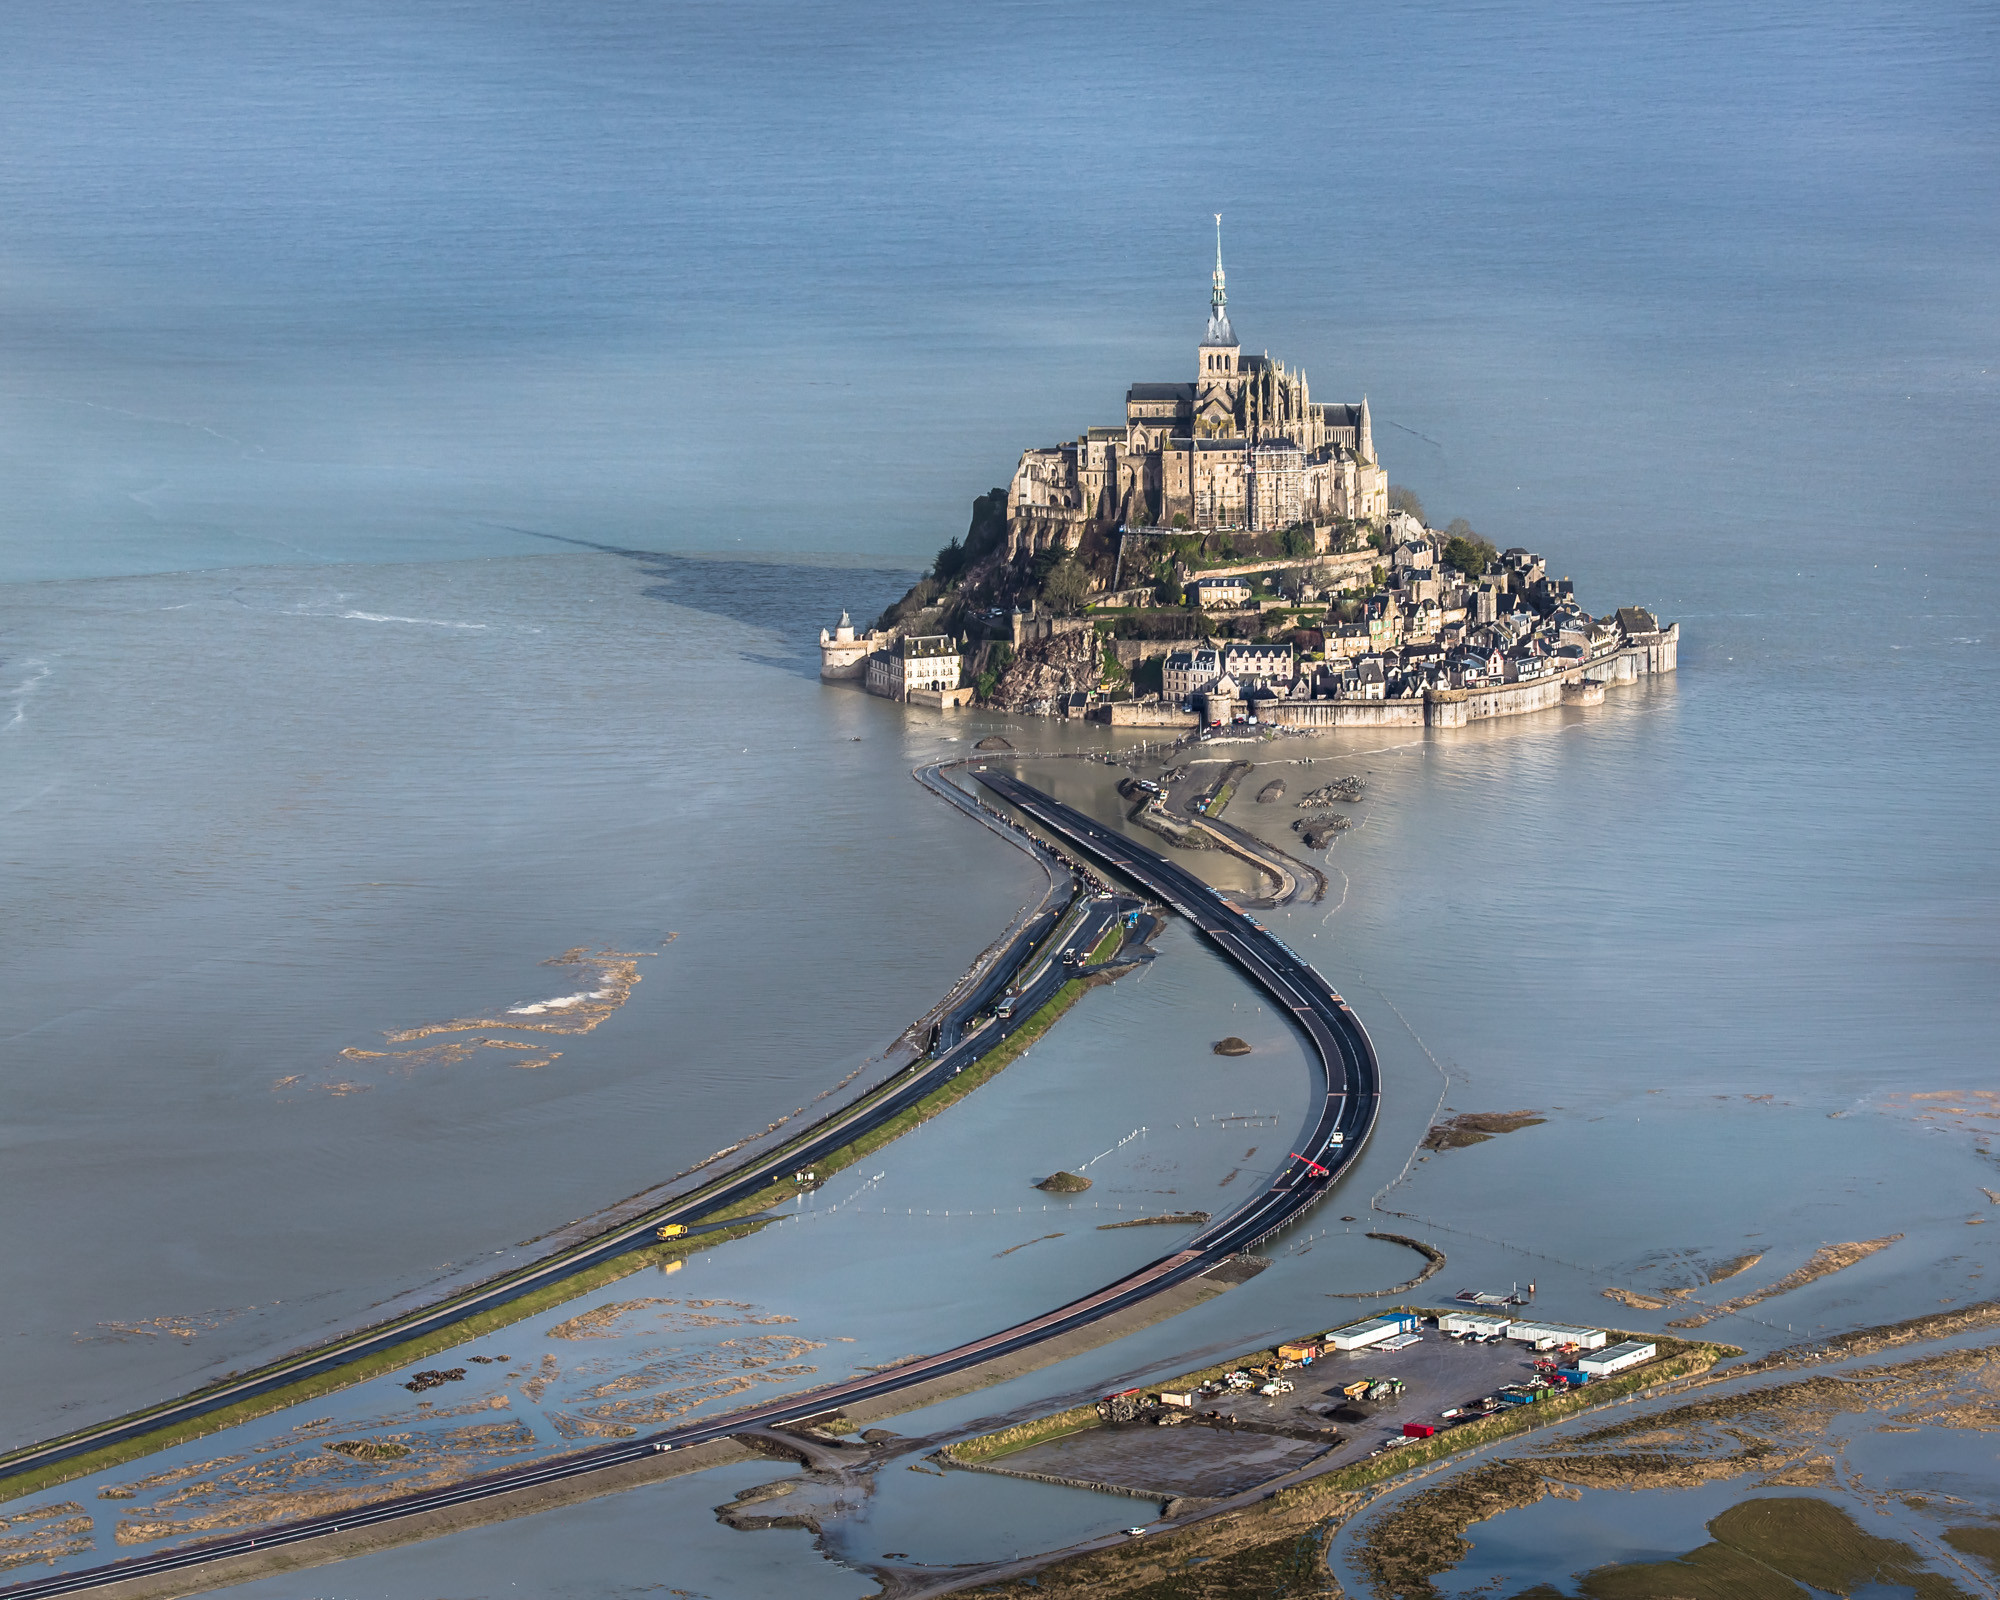 Lâu đài "bất khả xâm phạm" và những bí ẩn chưa được giải mã ở Pháp - 3